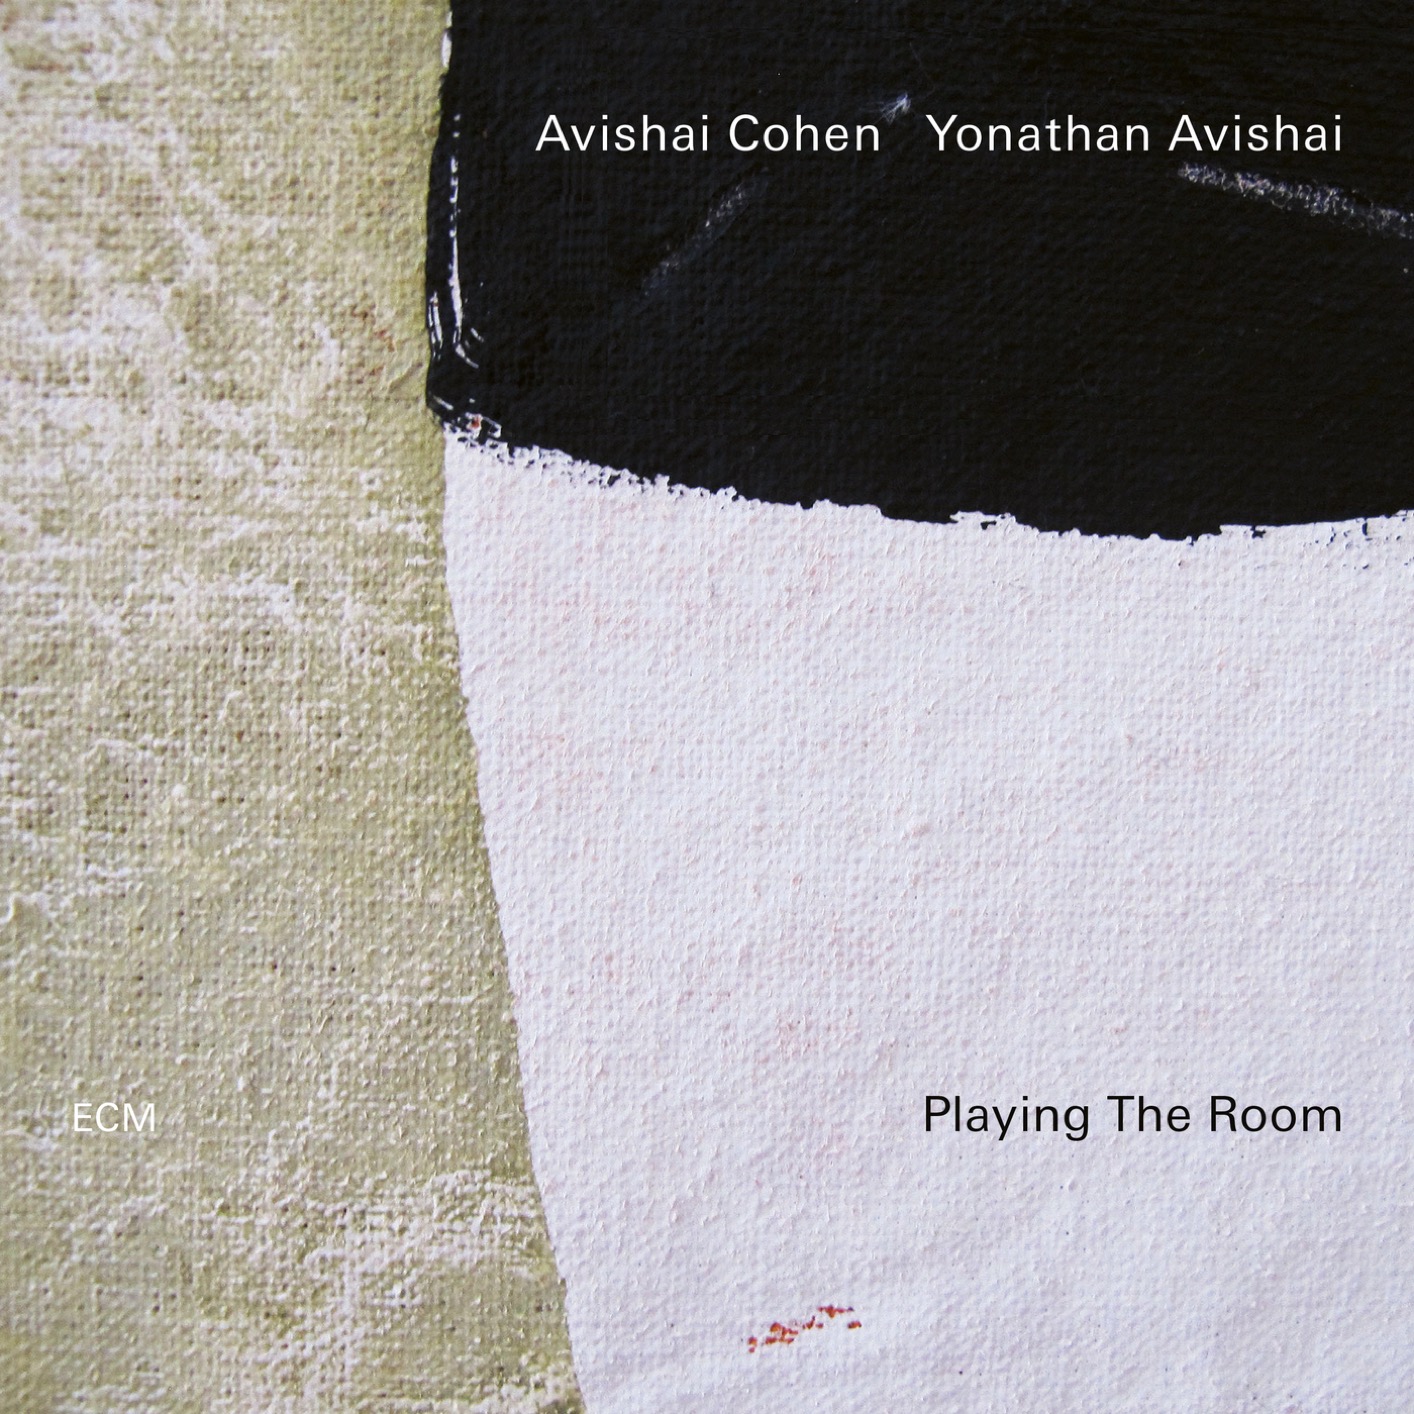 Avishai Cohen & Yonathan Avishai – Playing The Room (2019) [FLAC 24bit/96kHz]